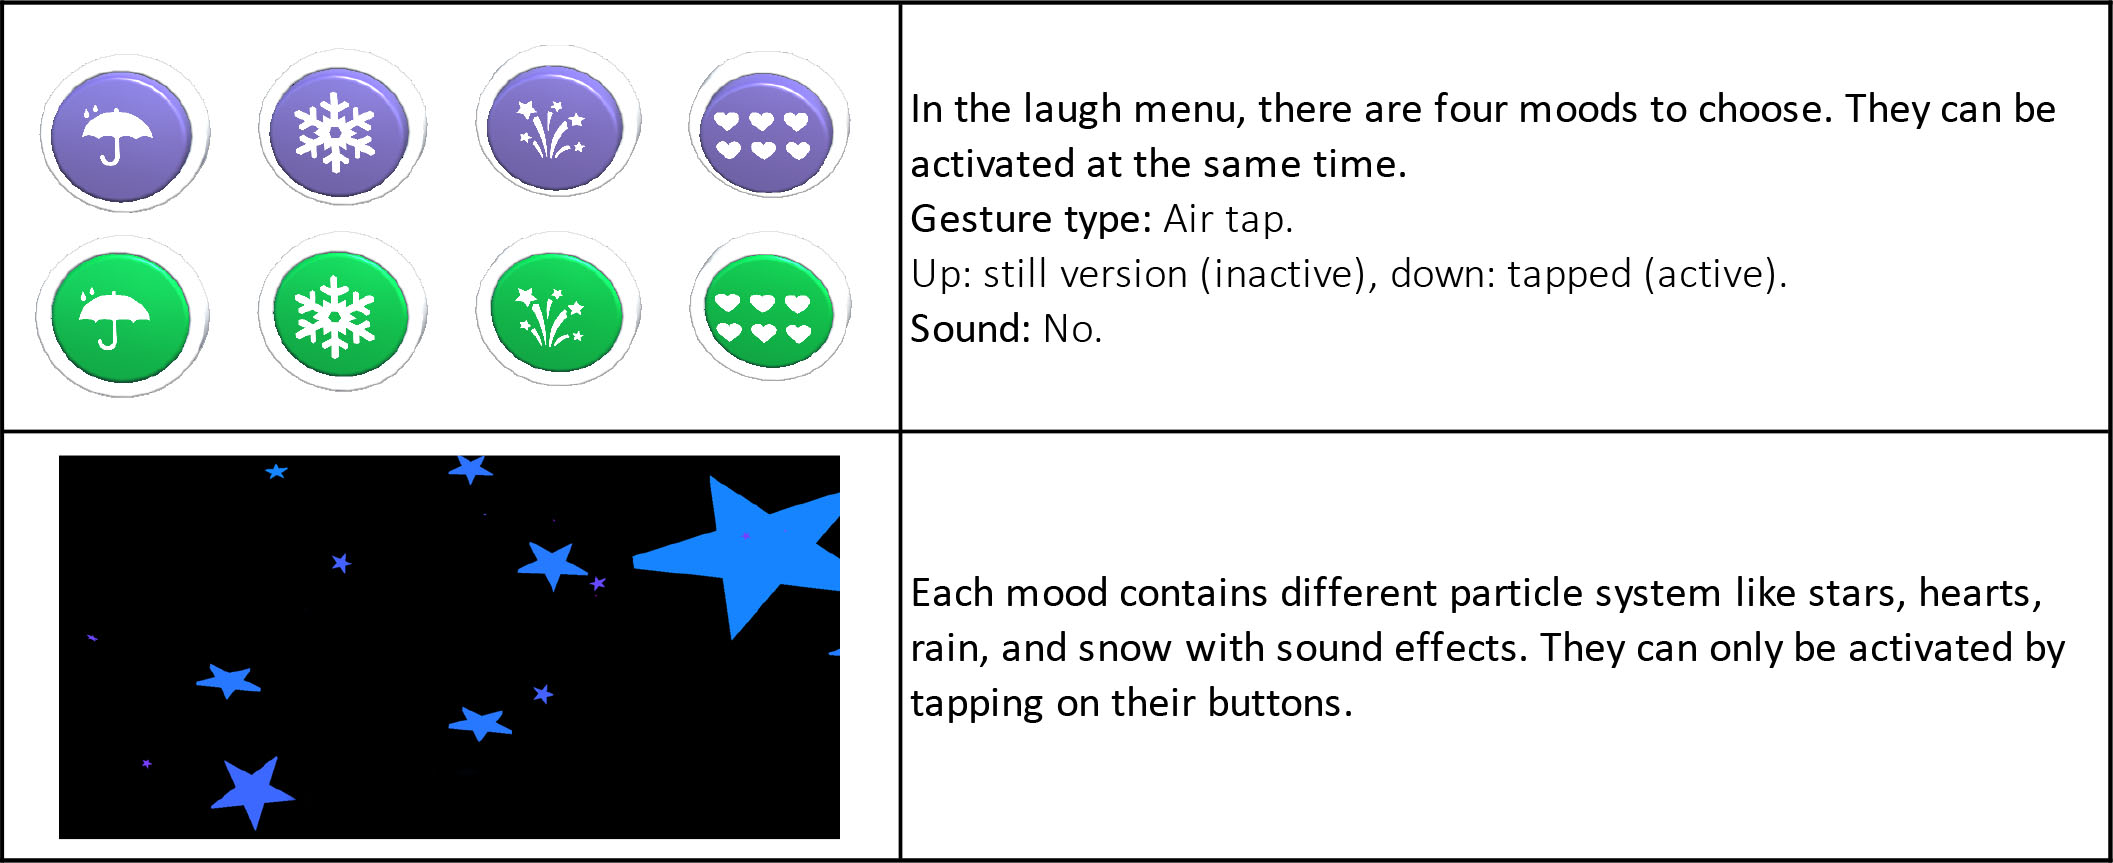 Table 4: Laugh-menu button actions.